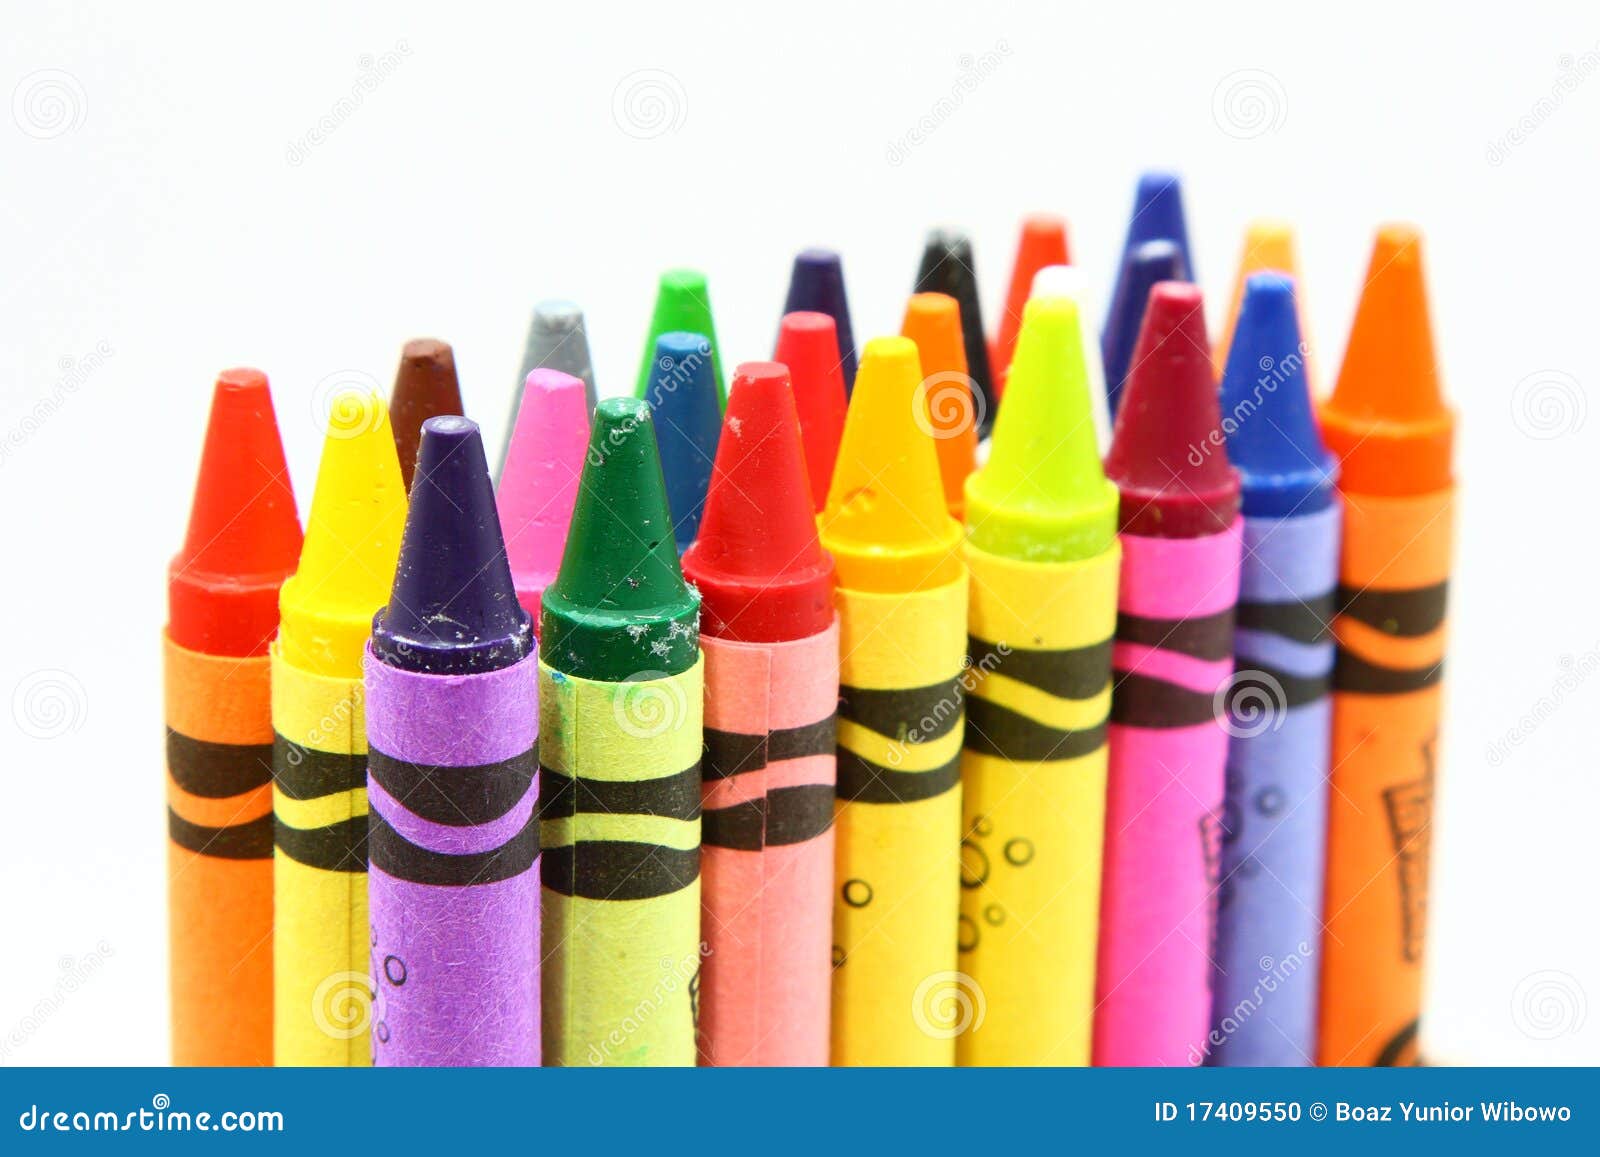 multicolor crayon pencils